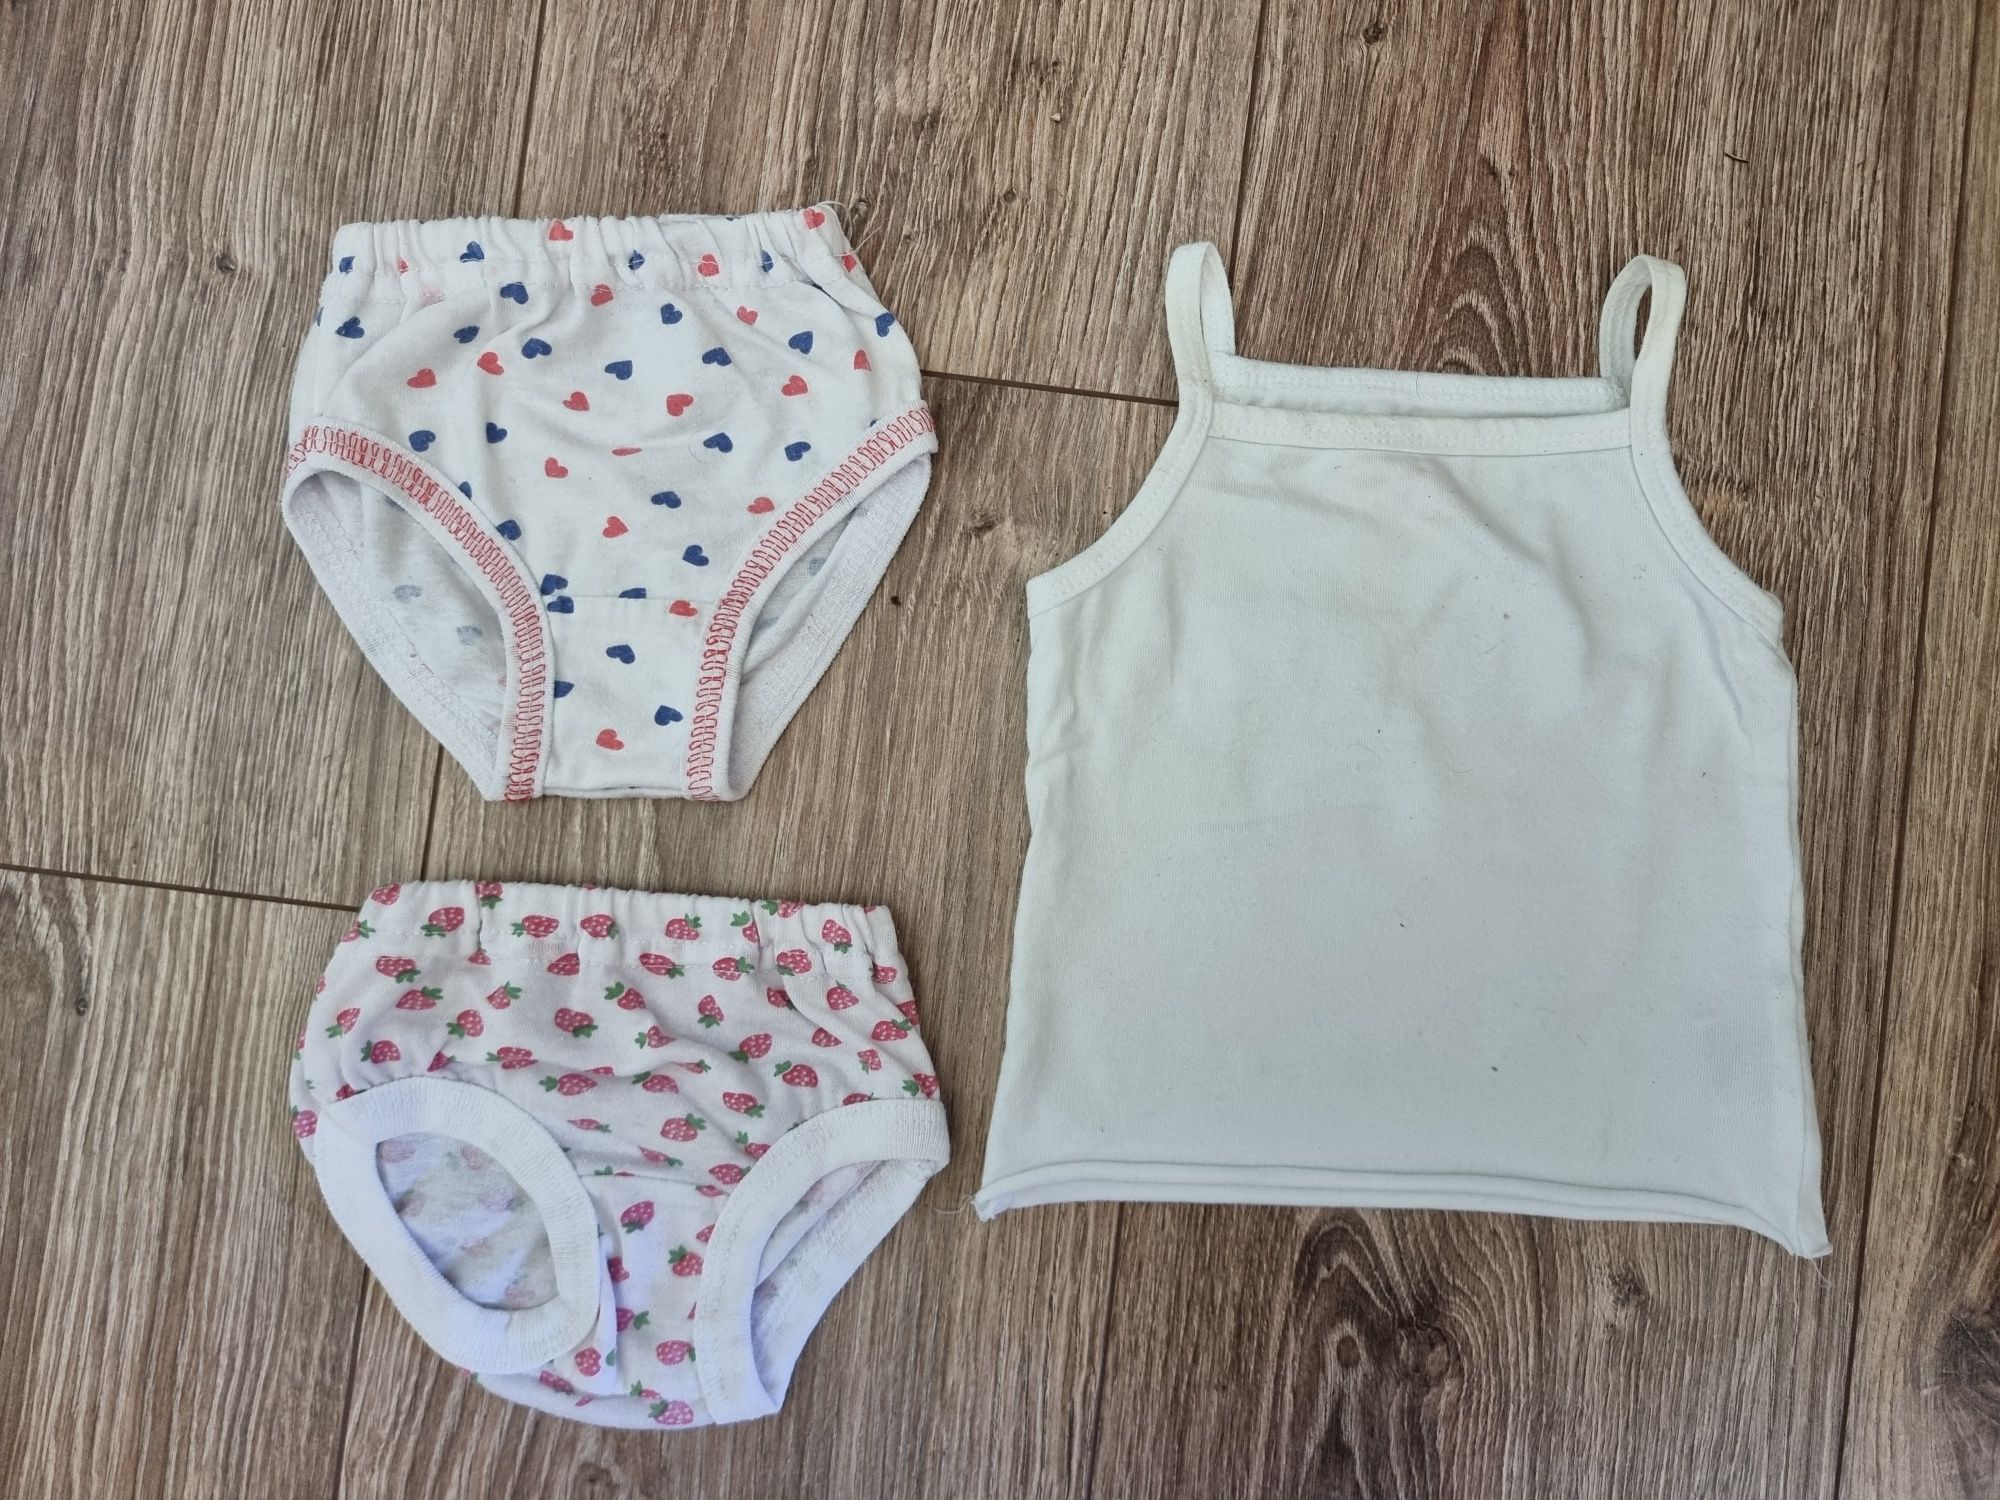 Набір одягу для дівчинки 0-3 місяці, пакет речей для немовляти 56-62см